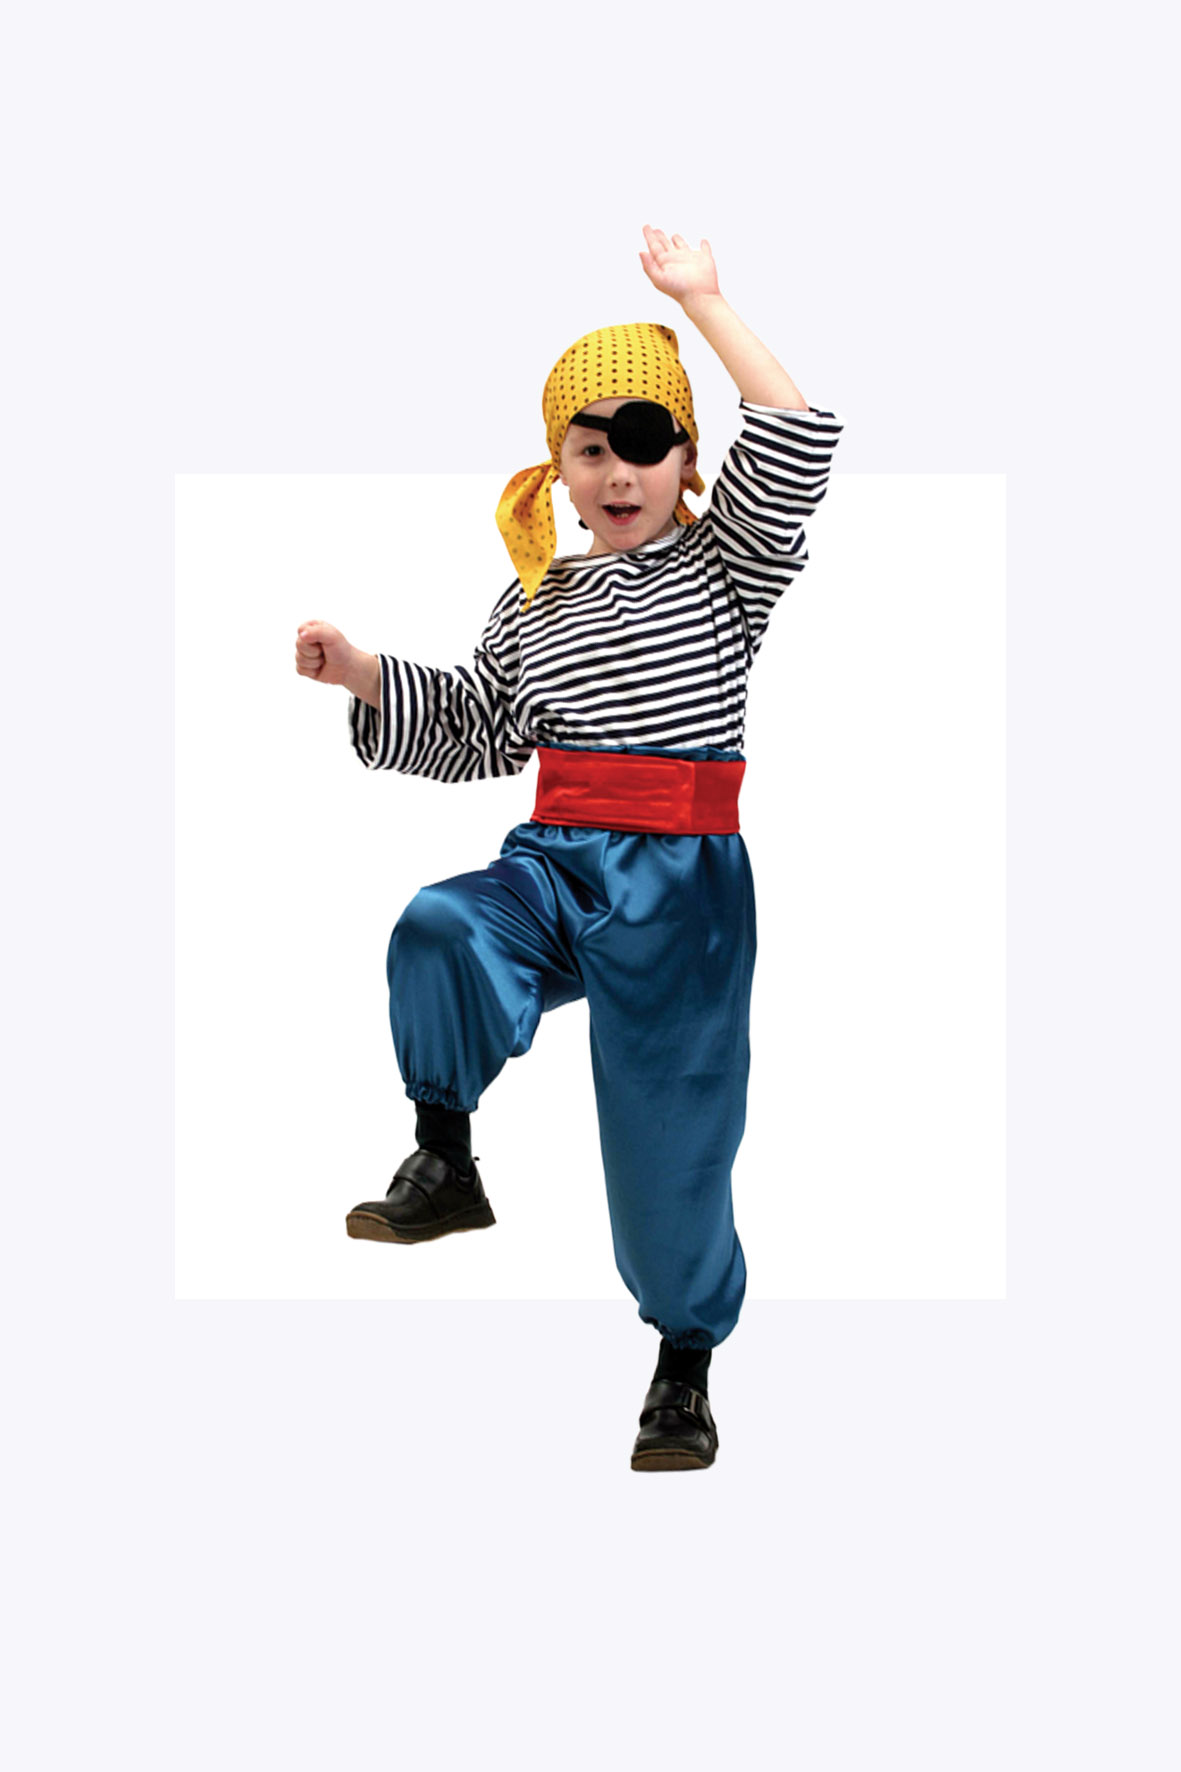 Шьем красивый и необычный детский костюм Пирата своими руками.